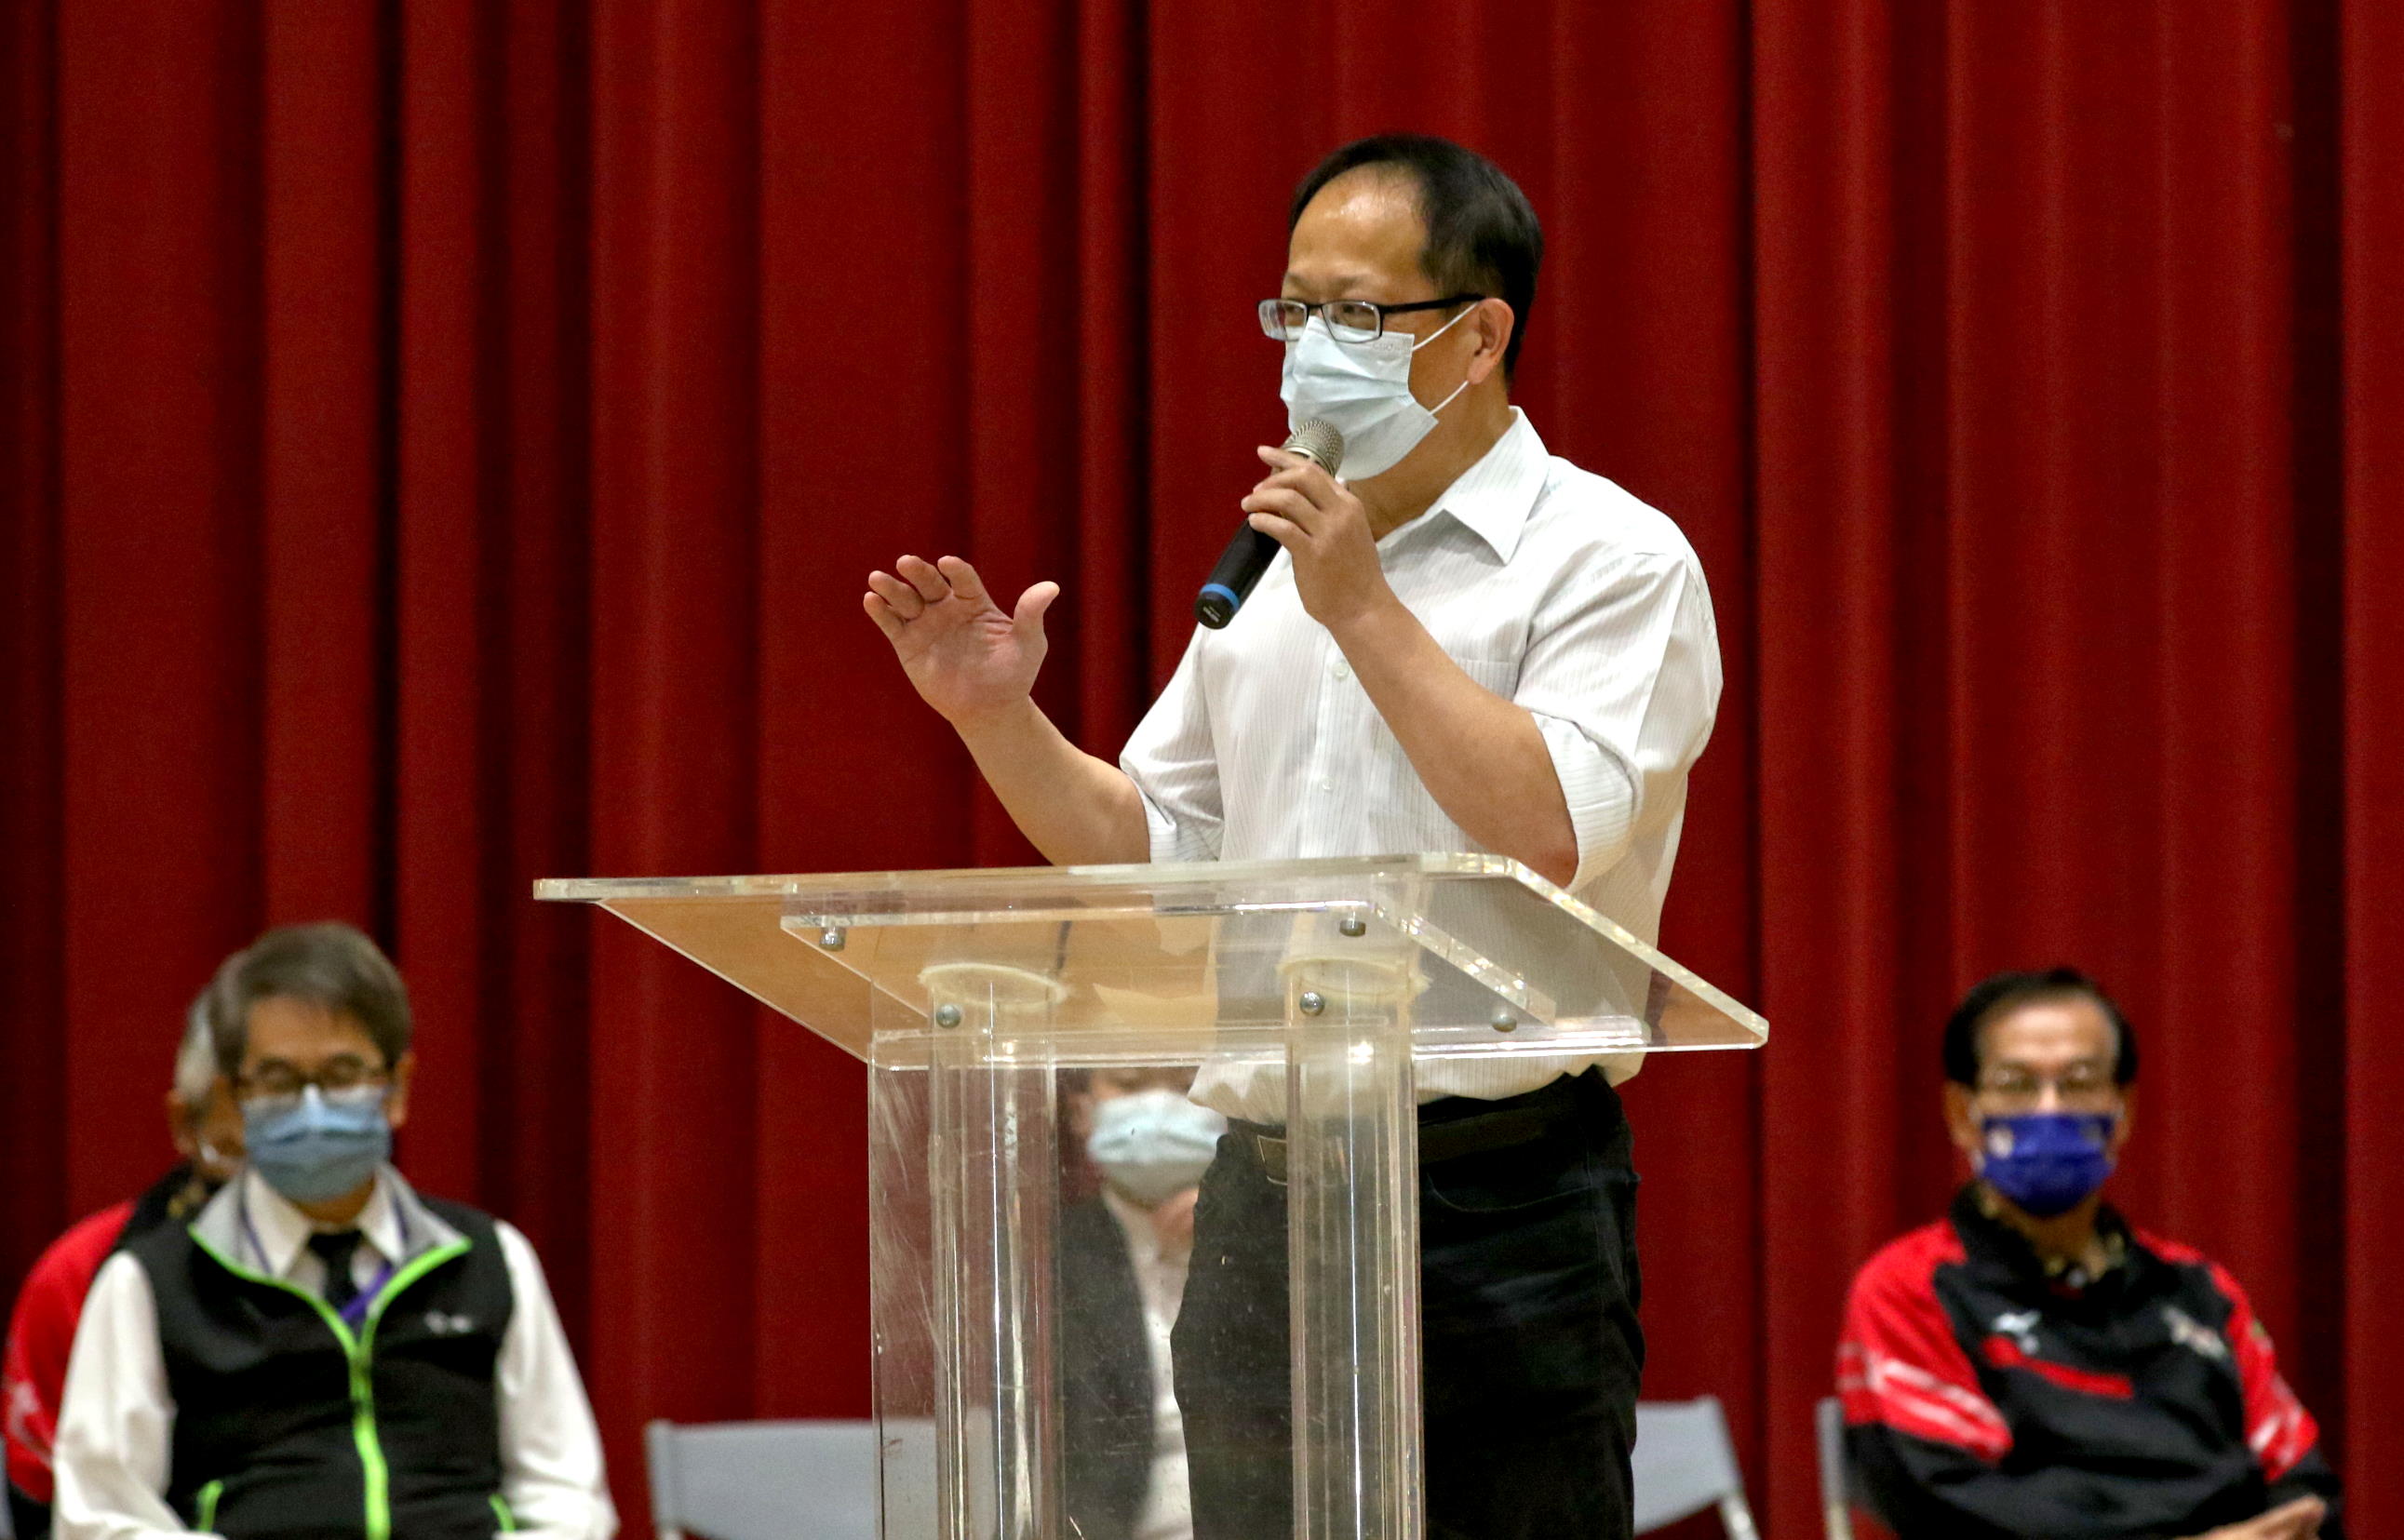 高雄市政府運動發展局主任秘書王耀弘主持全國第66屆「和家盃排球錦標賽」開幕典禮。高雄市運發局提供